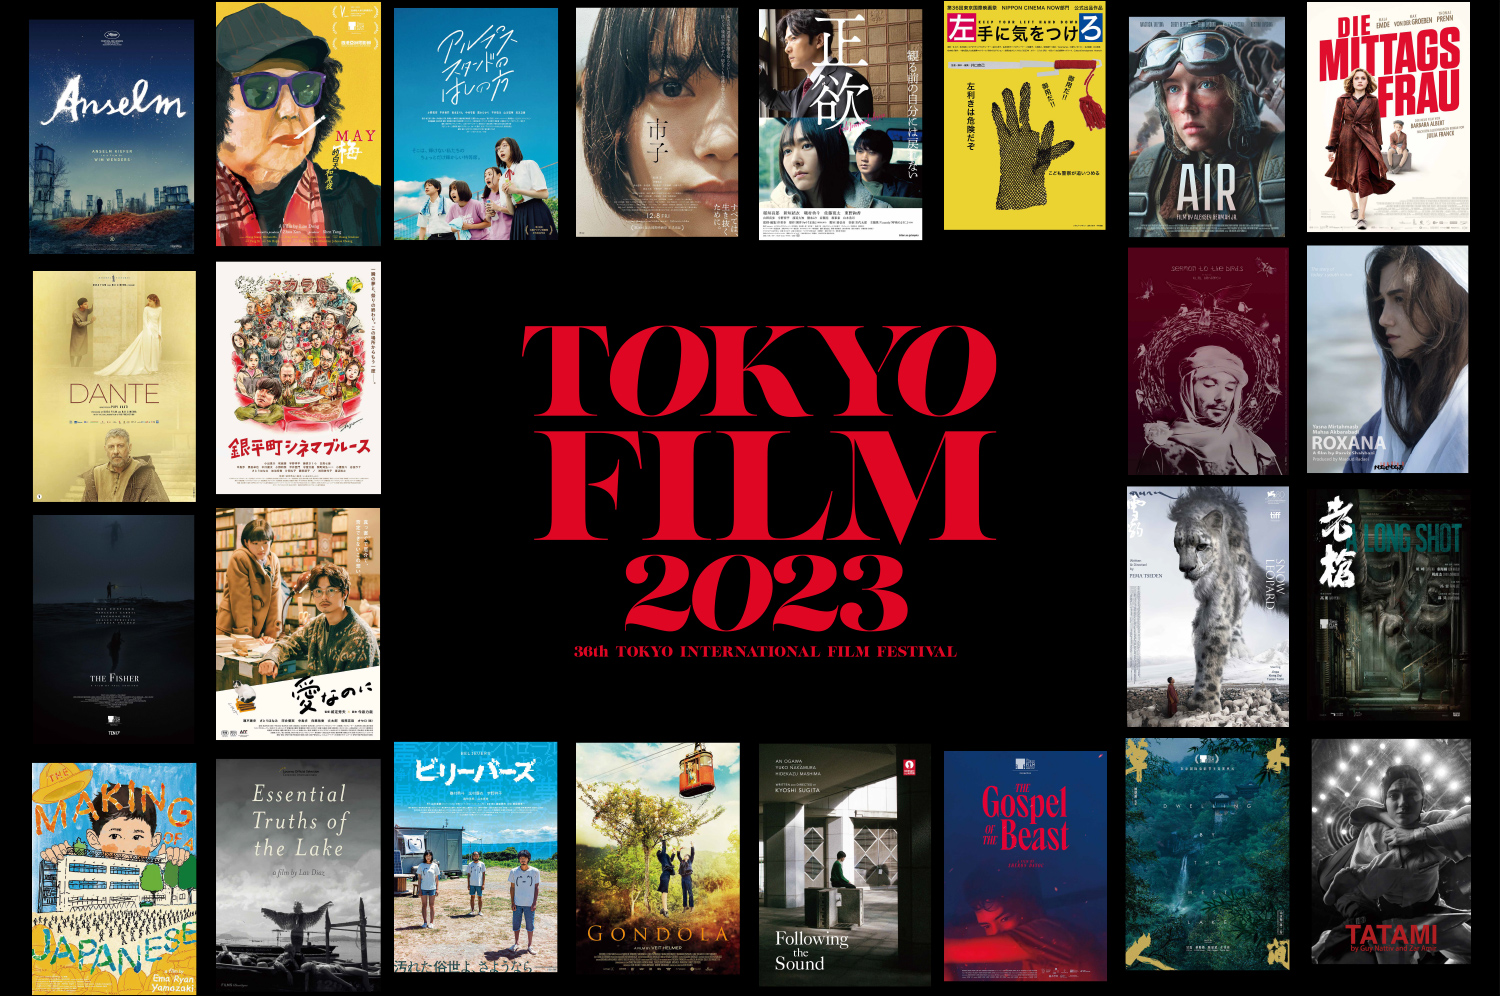 36th Tokyo International Film Festival: Oct.23–Nov.1, 2023